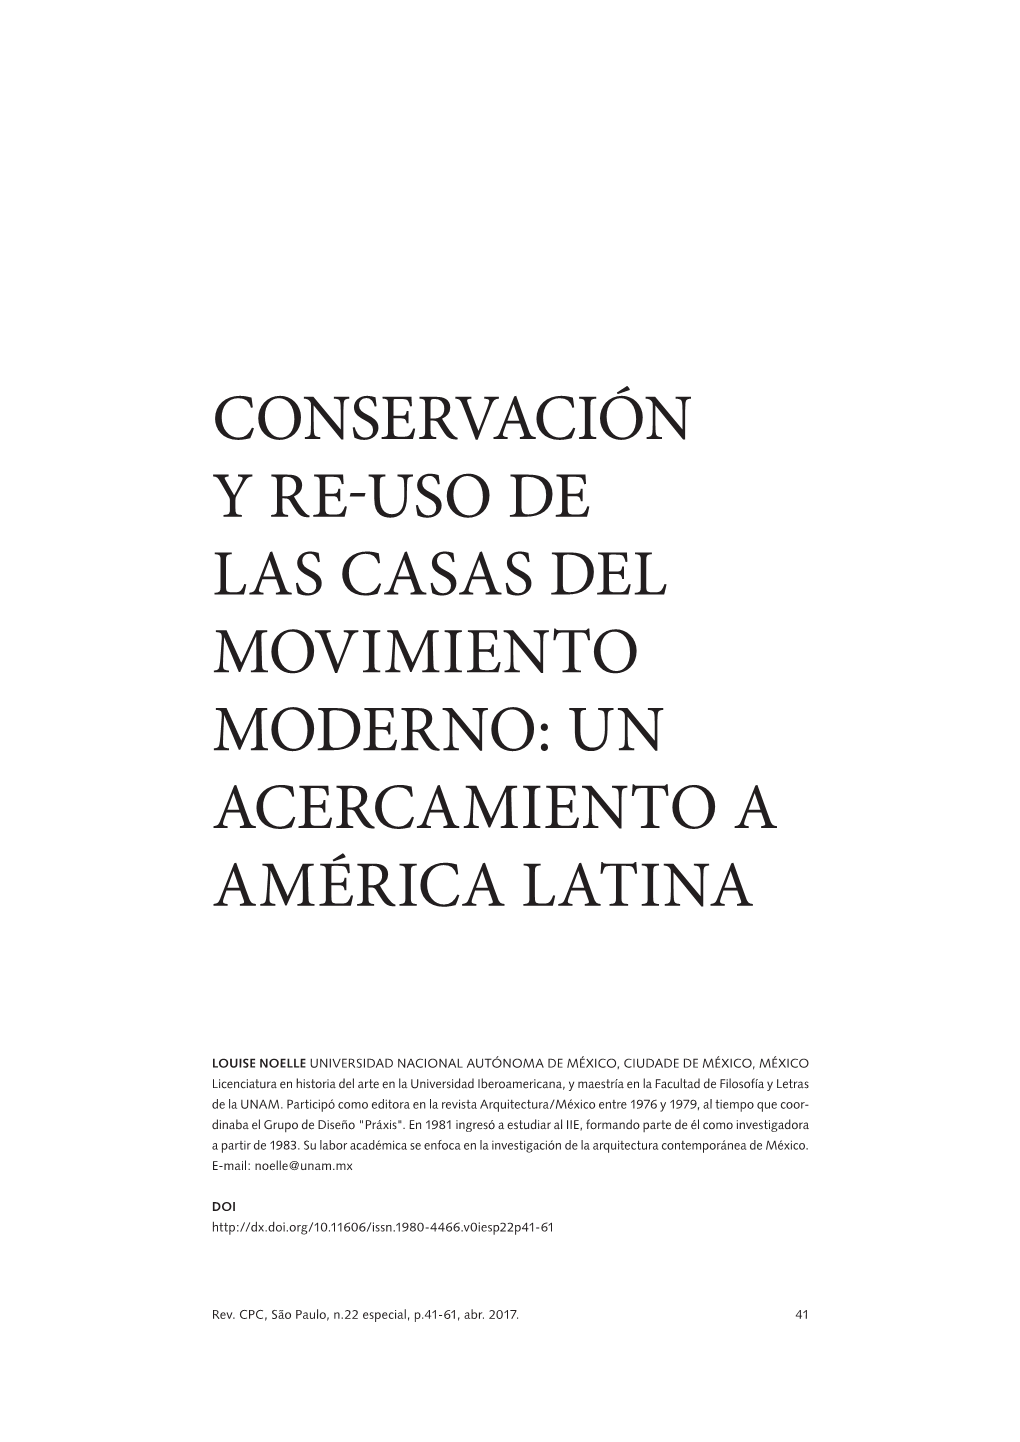 Conservación Y Re-Uso De Las Casas Del Movimiento Moderno: Un Acercamiento a América Latina Louise Noelle